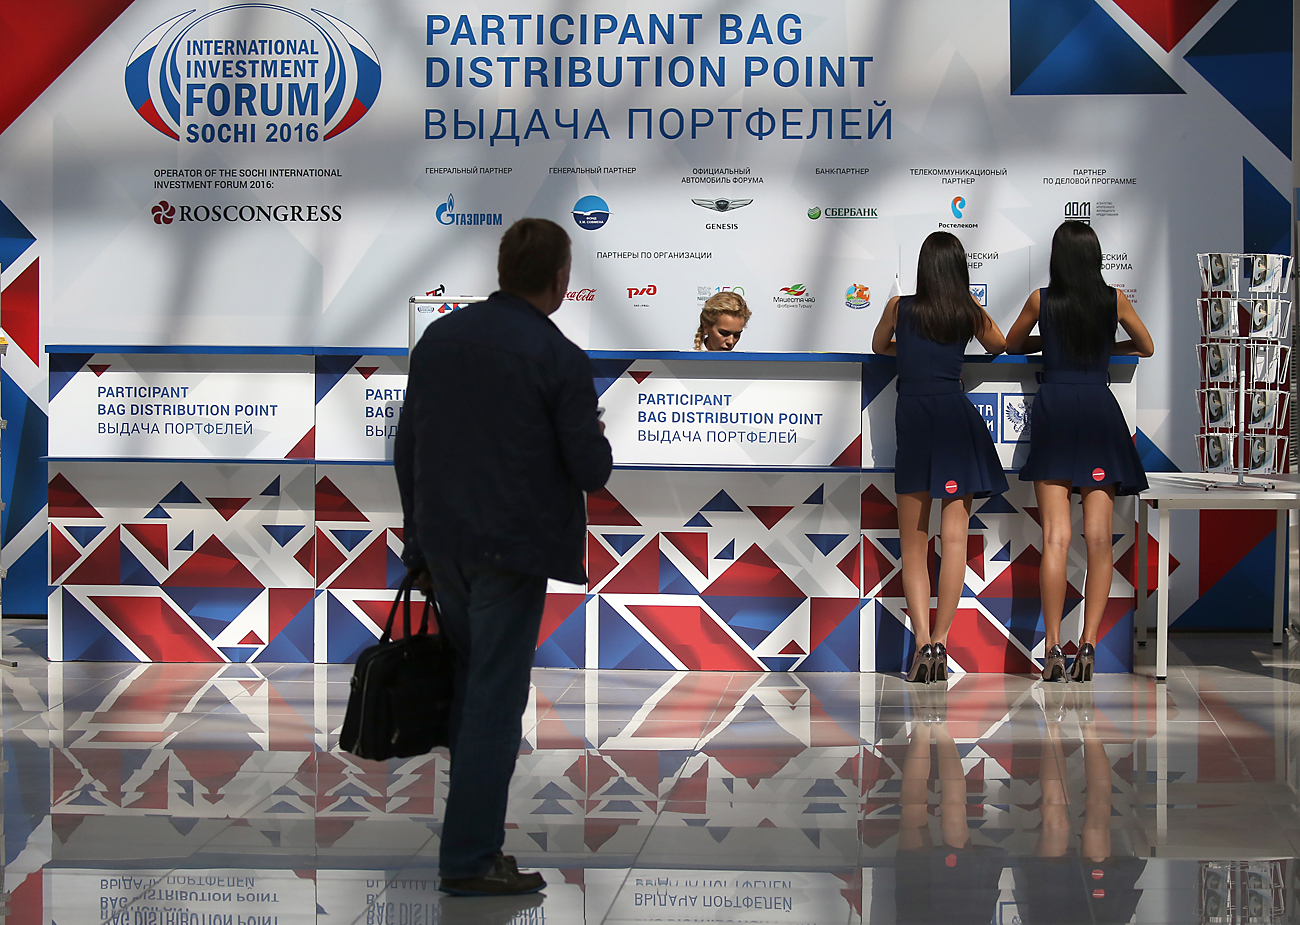 Al Forum economico internazionale si conteranno settemila partecipanti provenienti da 25 Paesi.